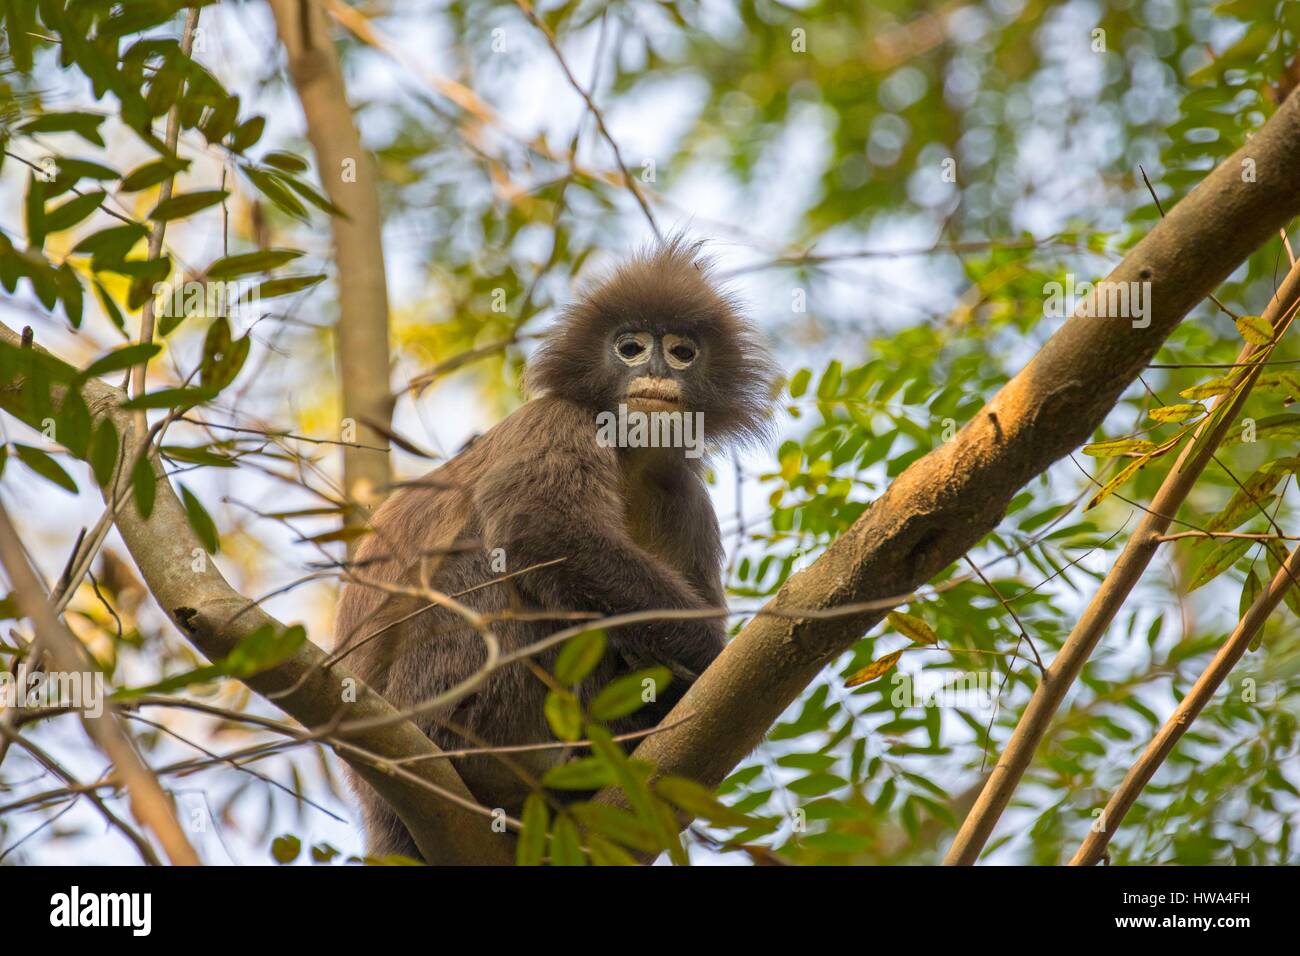 India, Tripura state, Phayre's leaf monkey or Phayre's langur  (Trachypithecus phayrei Stock Photo - Alamy